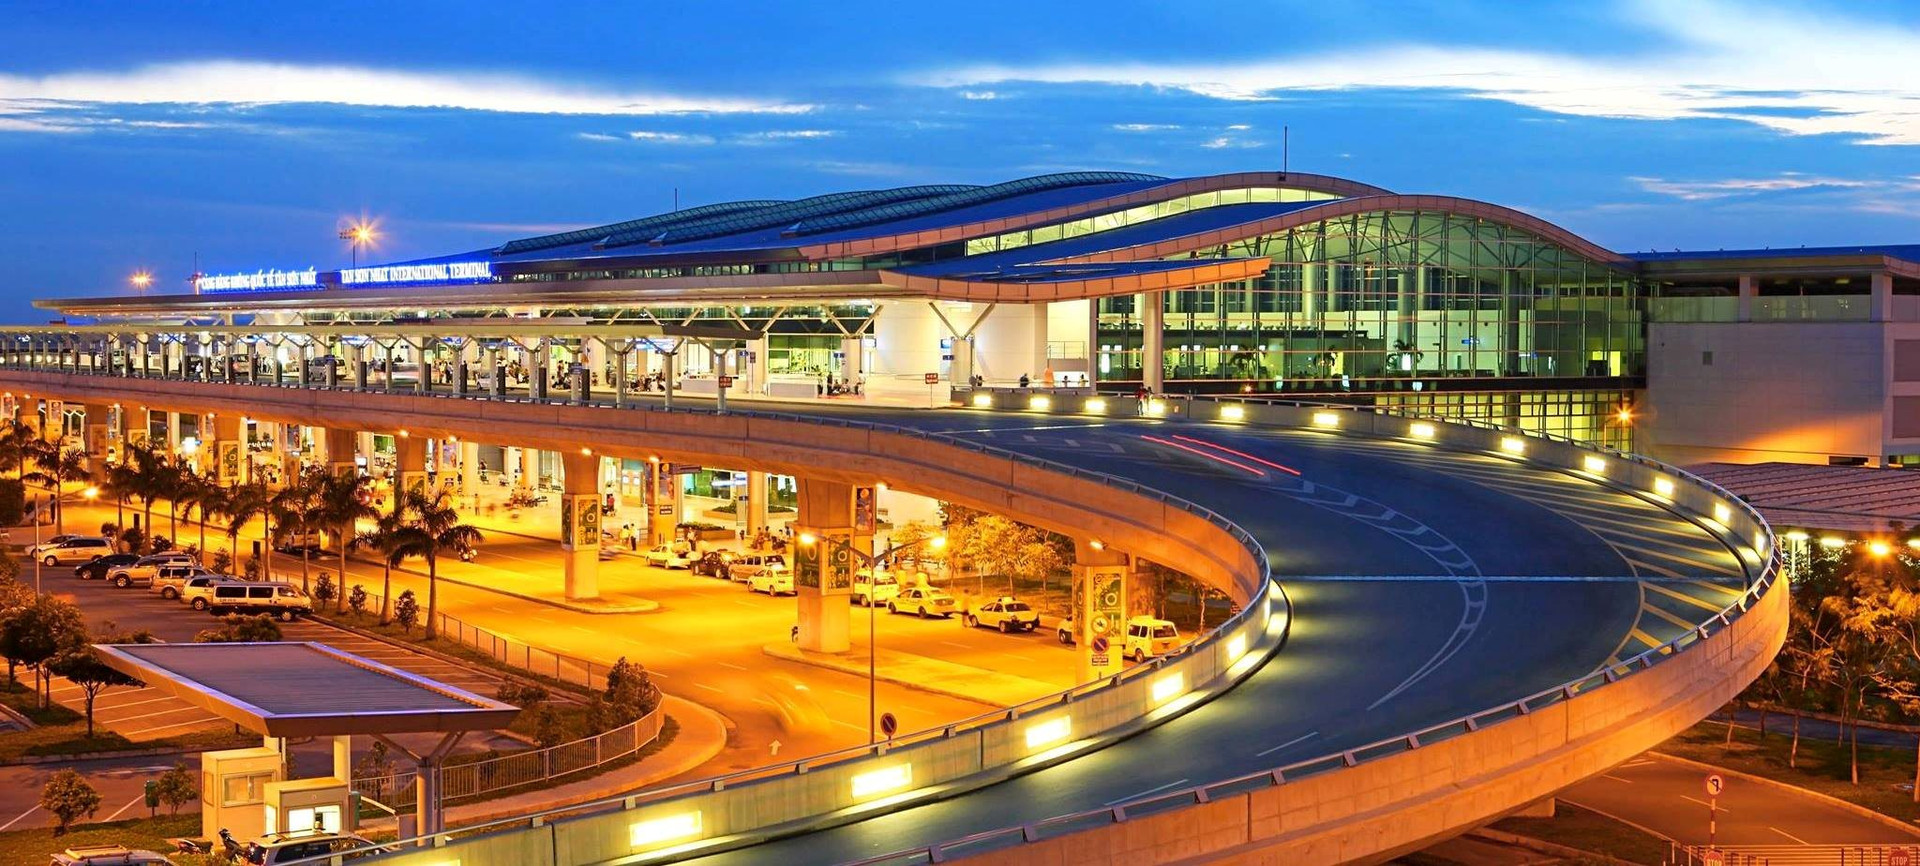 Vừa trúng gói thầu lớn nhất dự án sân bay Long Thành, một phần ba liên danh Vietur chính thức ký gói thầu hơn 9.000 tỷ đồng tại sân bay Tân Sơn Nhất